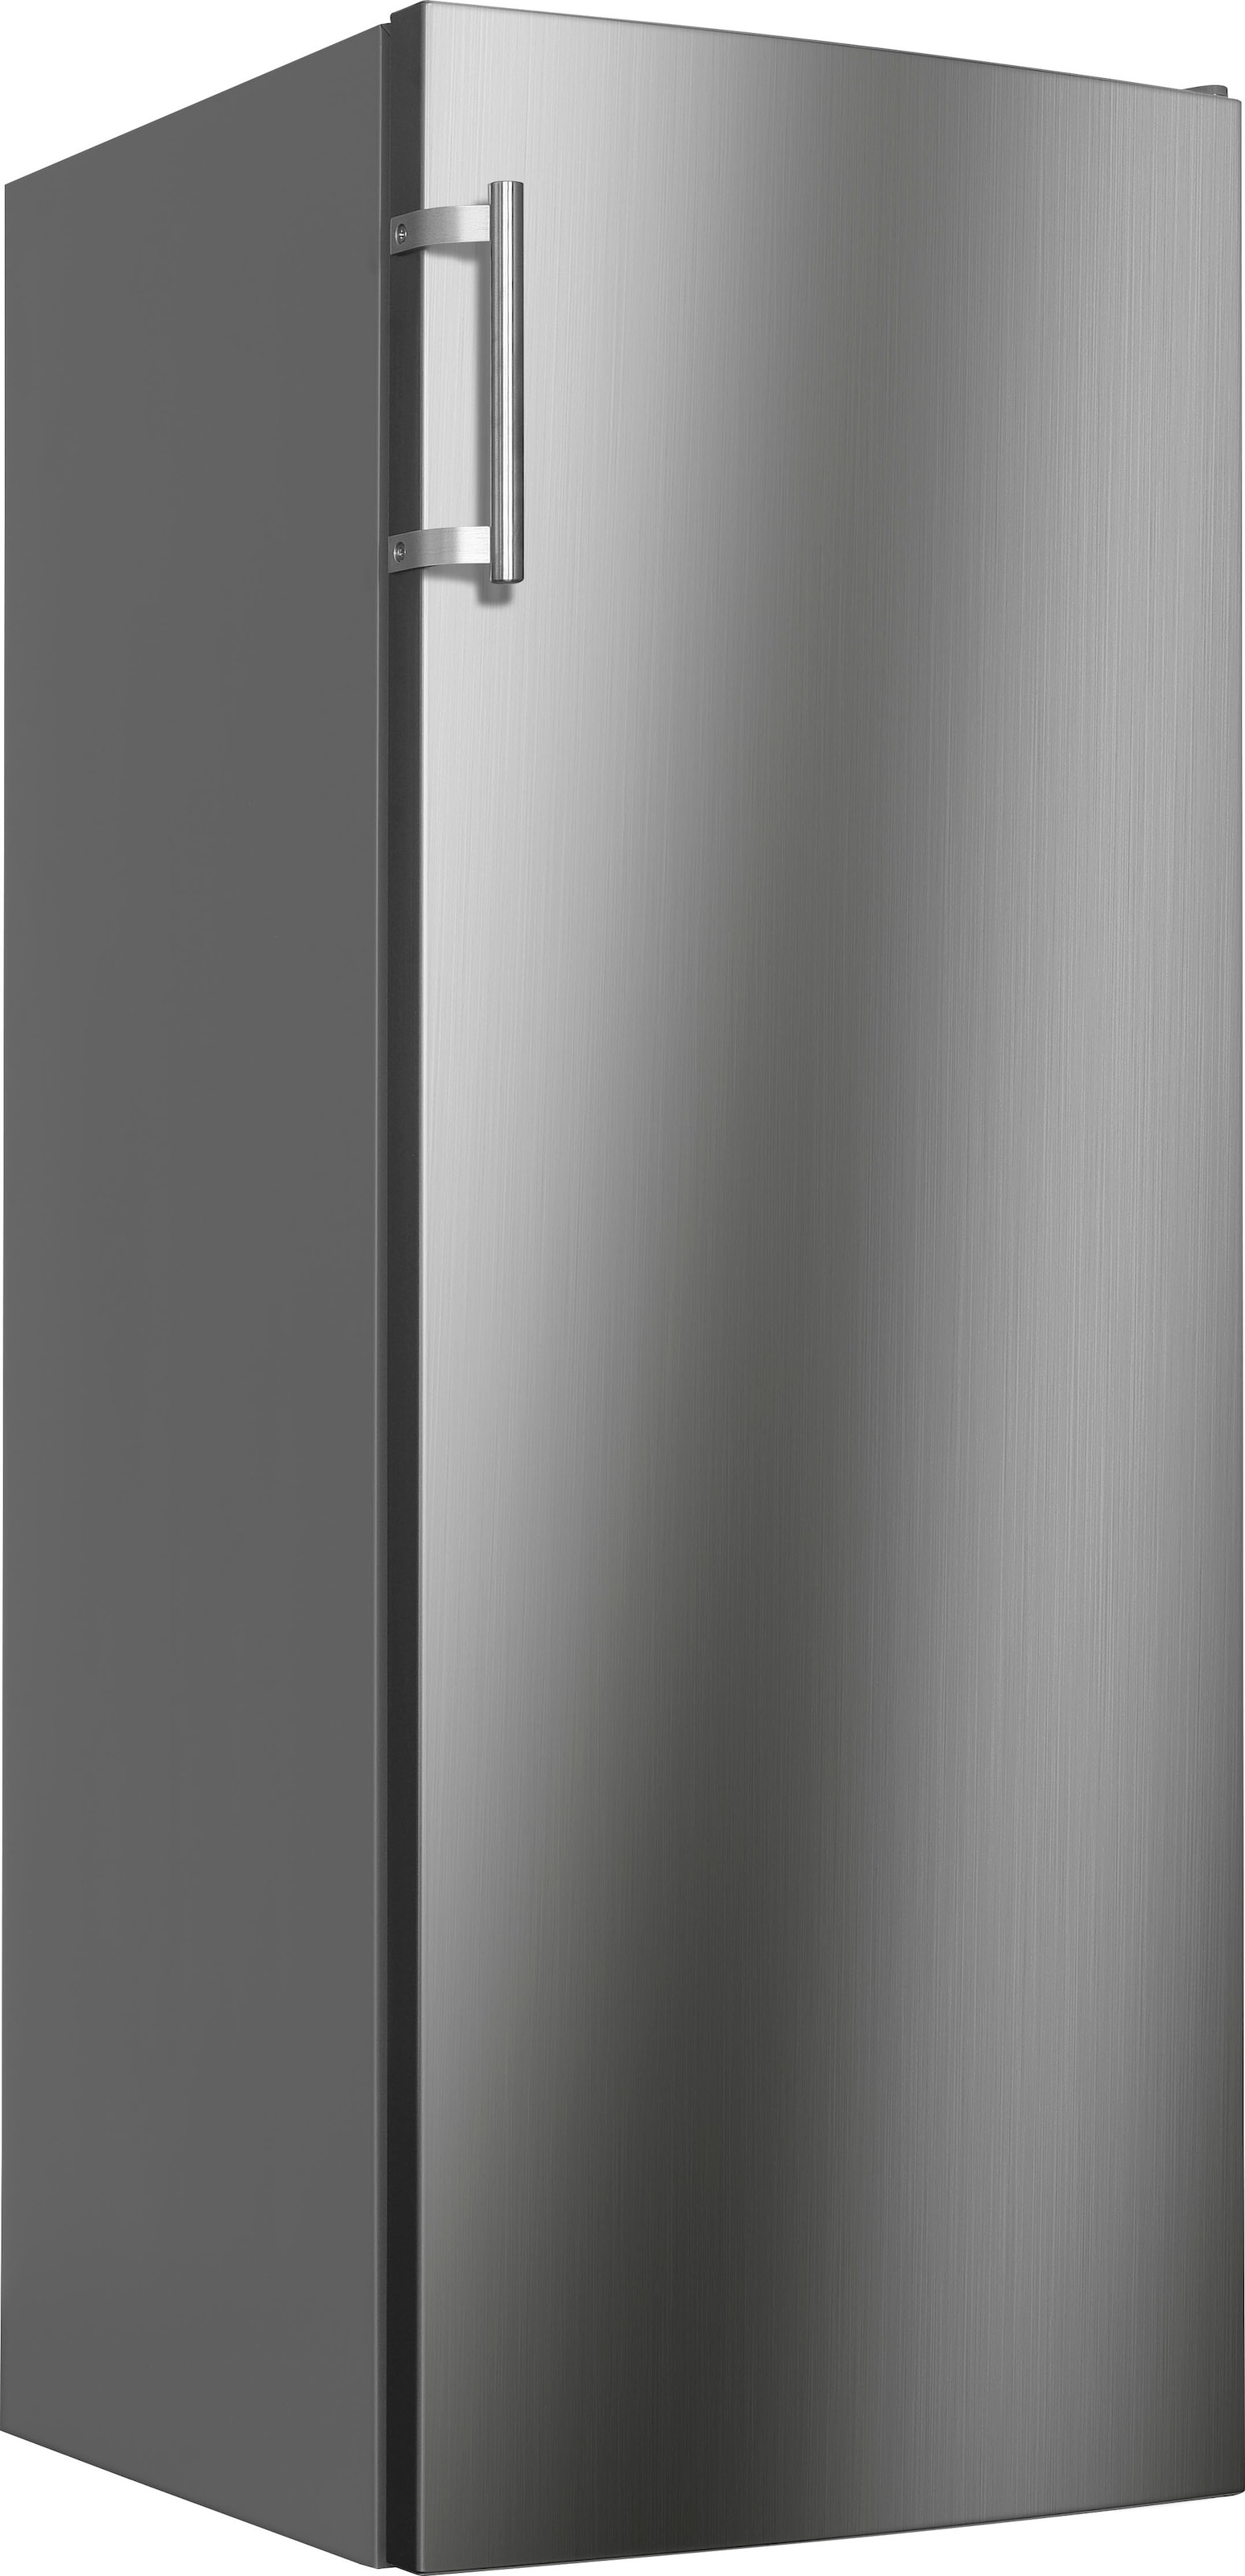 Hanseatic Gefrierschrank »HGS14355CNFI«, 143 cm hoch, 54 cm breit, NoFrost, Schnellgefrierfunktion, Türalarm